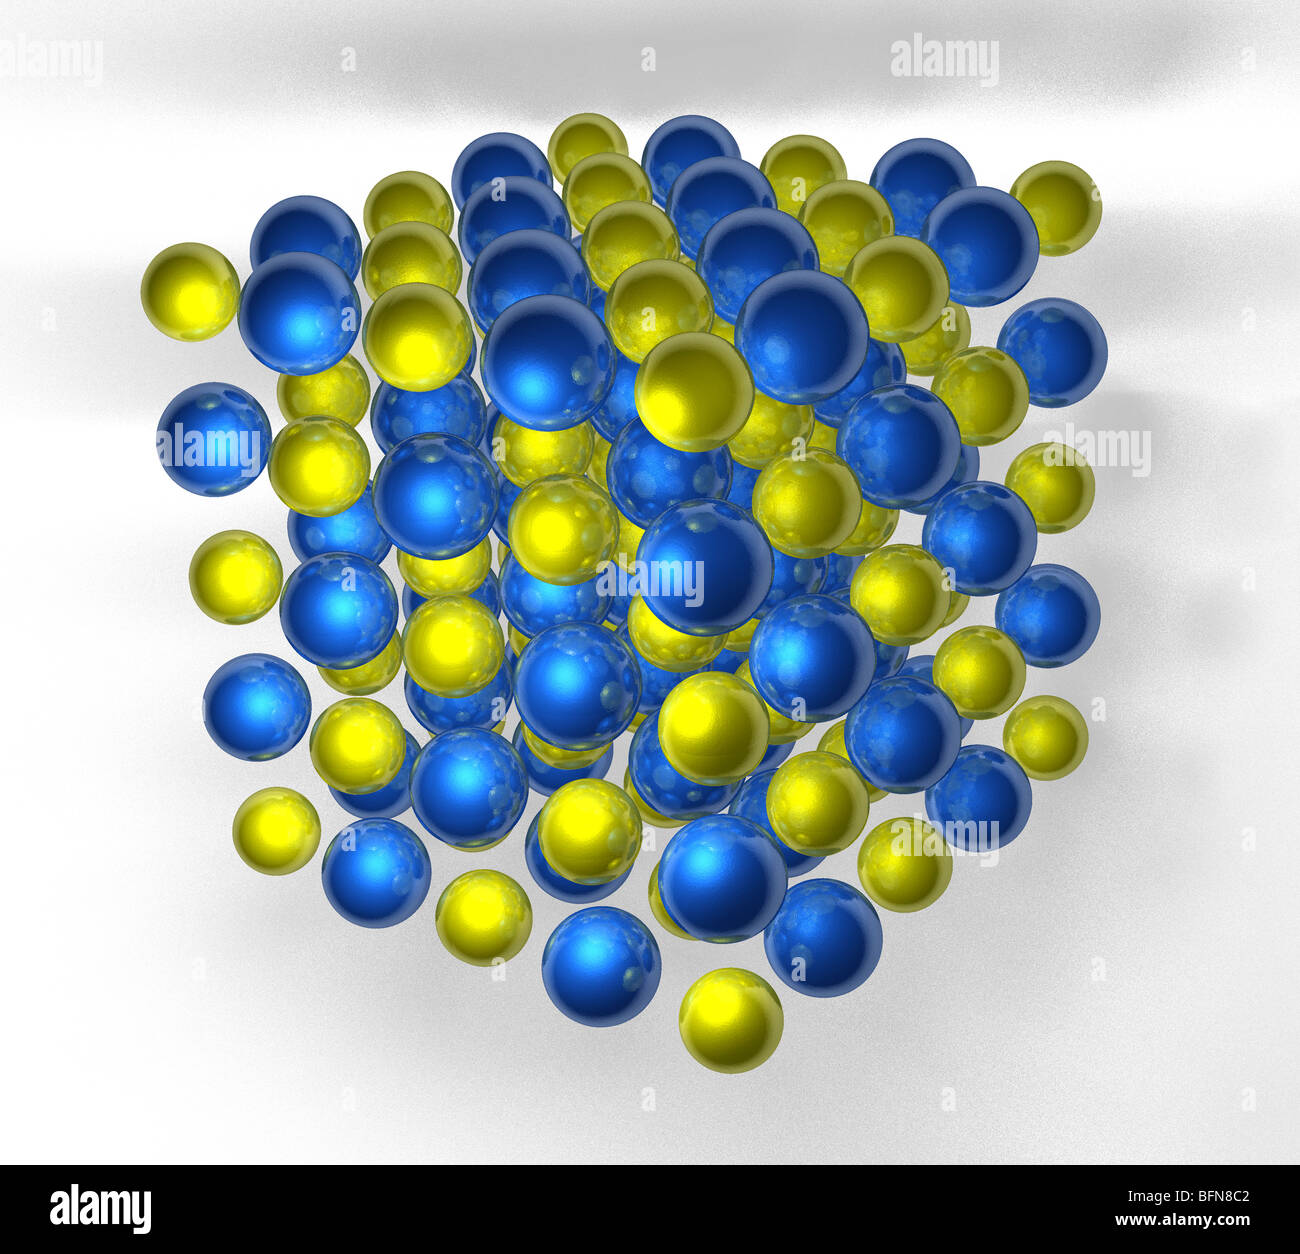 Computer illustrazione grafica della struttura del reticolo cristallino di Sale e cloruro di sodio. Foto Stock